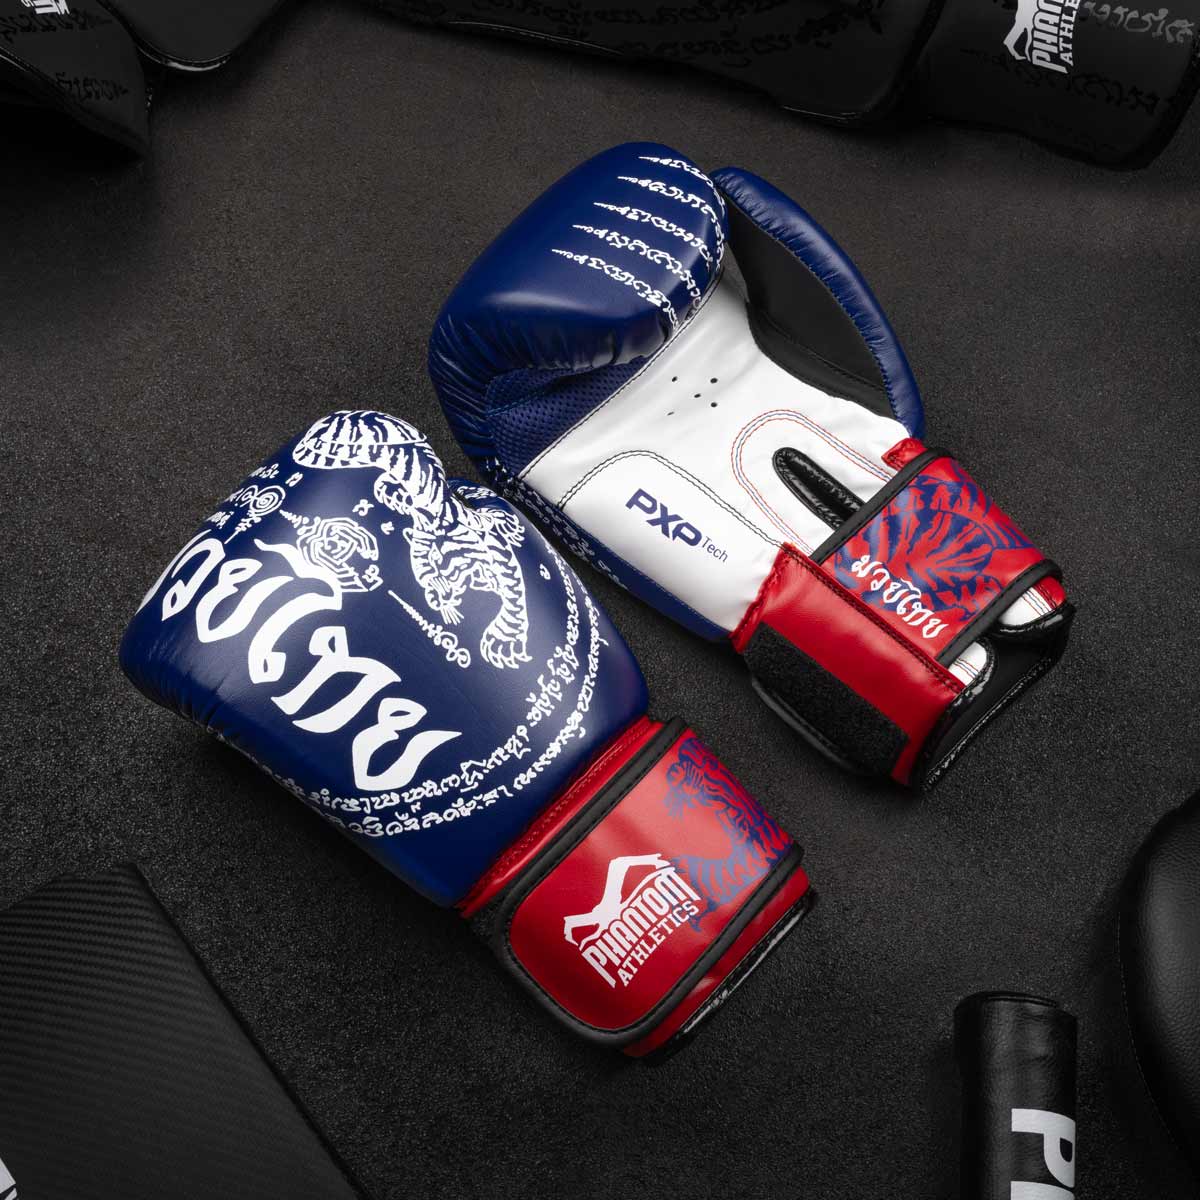 Die Phantom Muay Thai Boxhandschuhe in Top Qualität mit thailändischem Print in der Farbe Blau/Weiss/Rot am Gymboden.